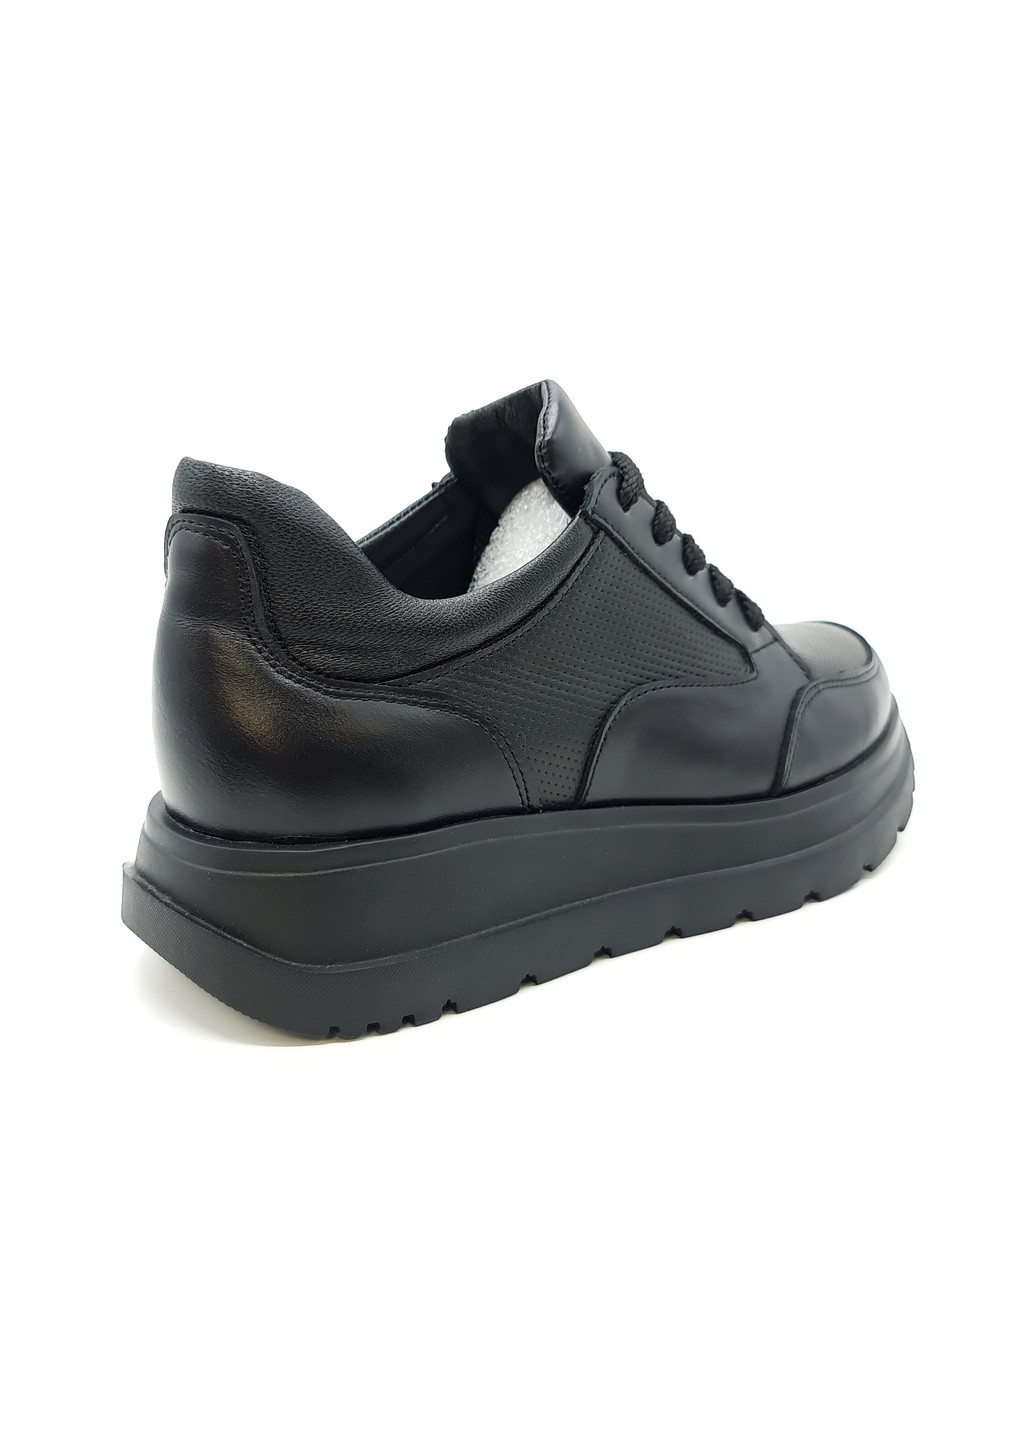 Чорні всесезонні жіночі кросівки чорні шкіряні mr-13-2 23 см (р) Morento